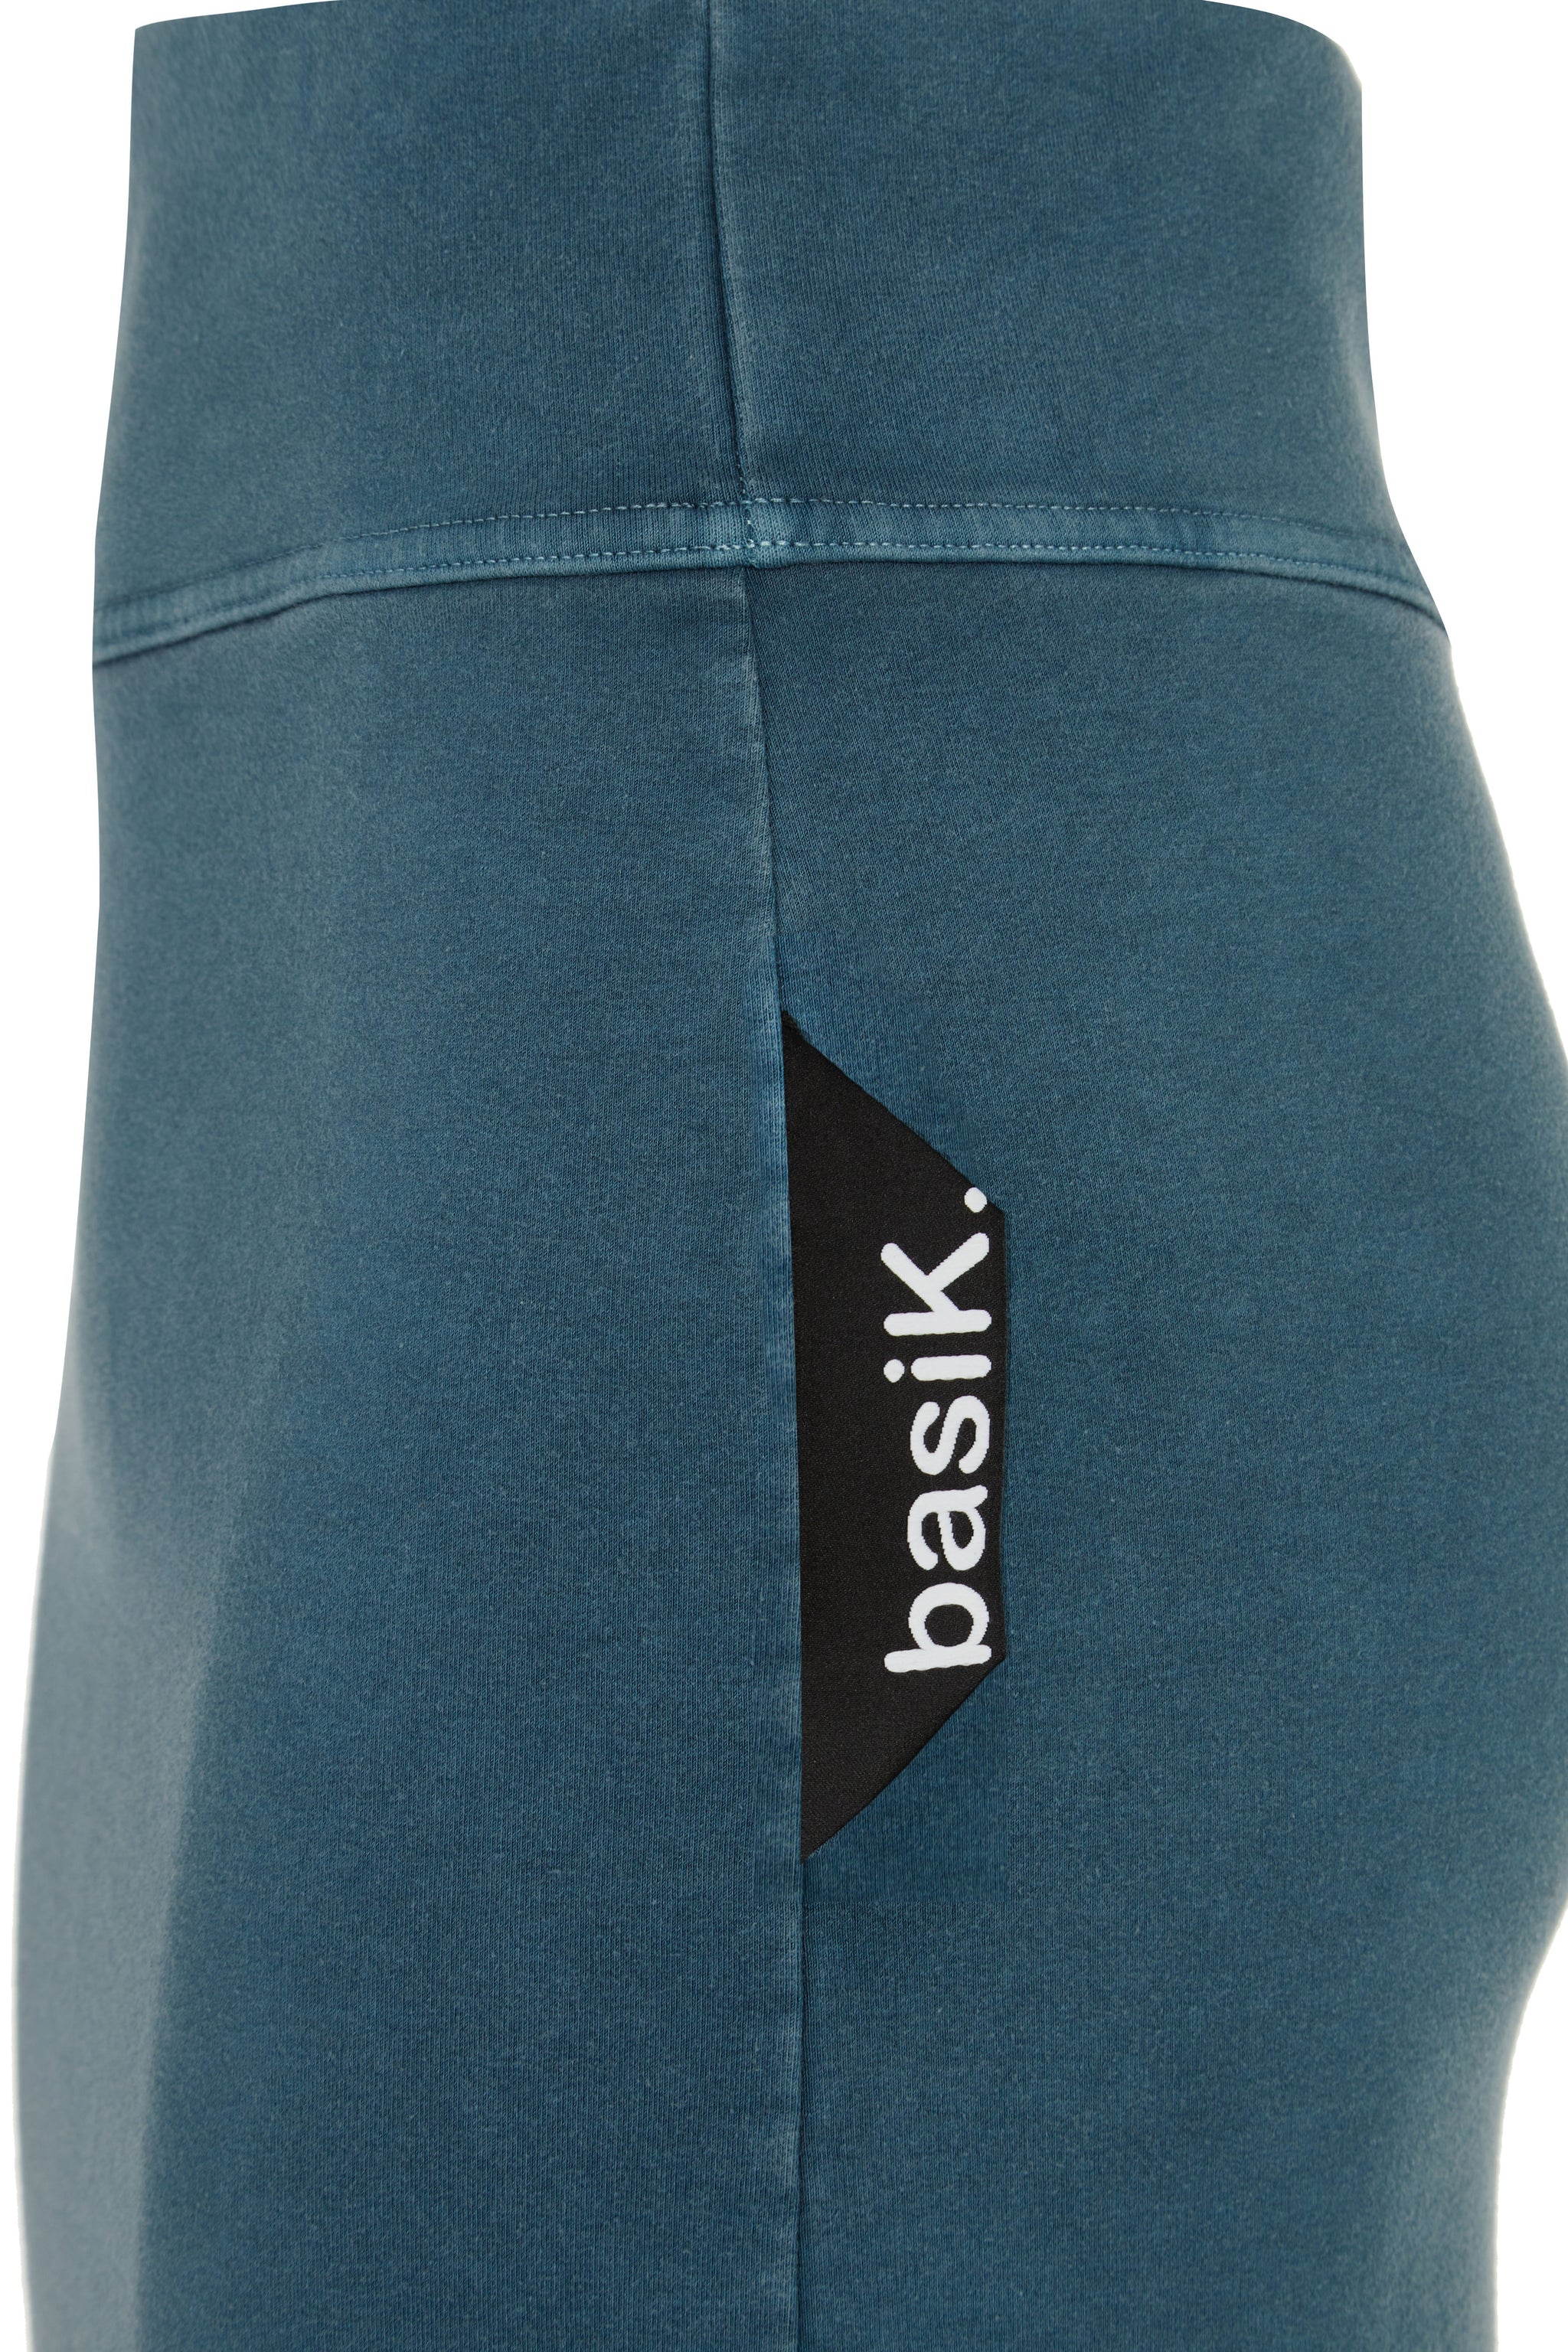 basiK• Maxi Skirt in Petrol